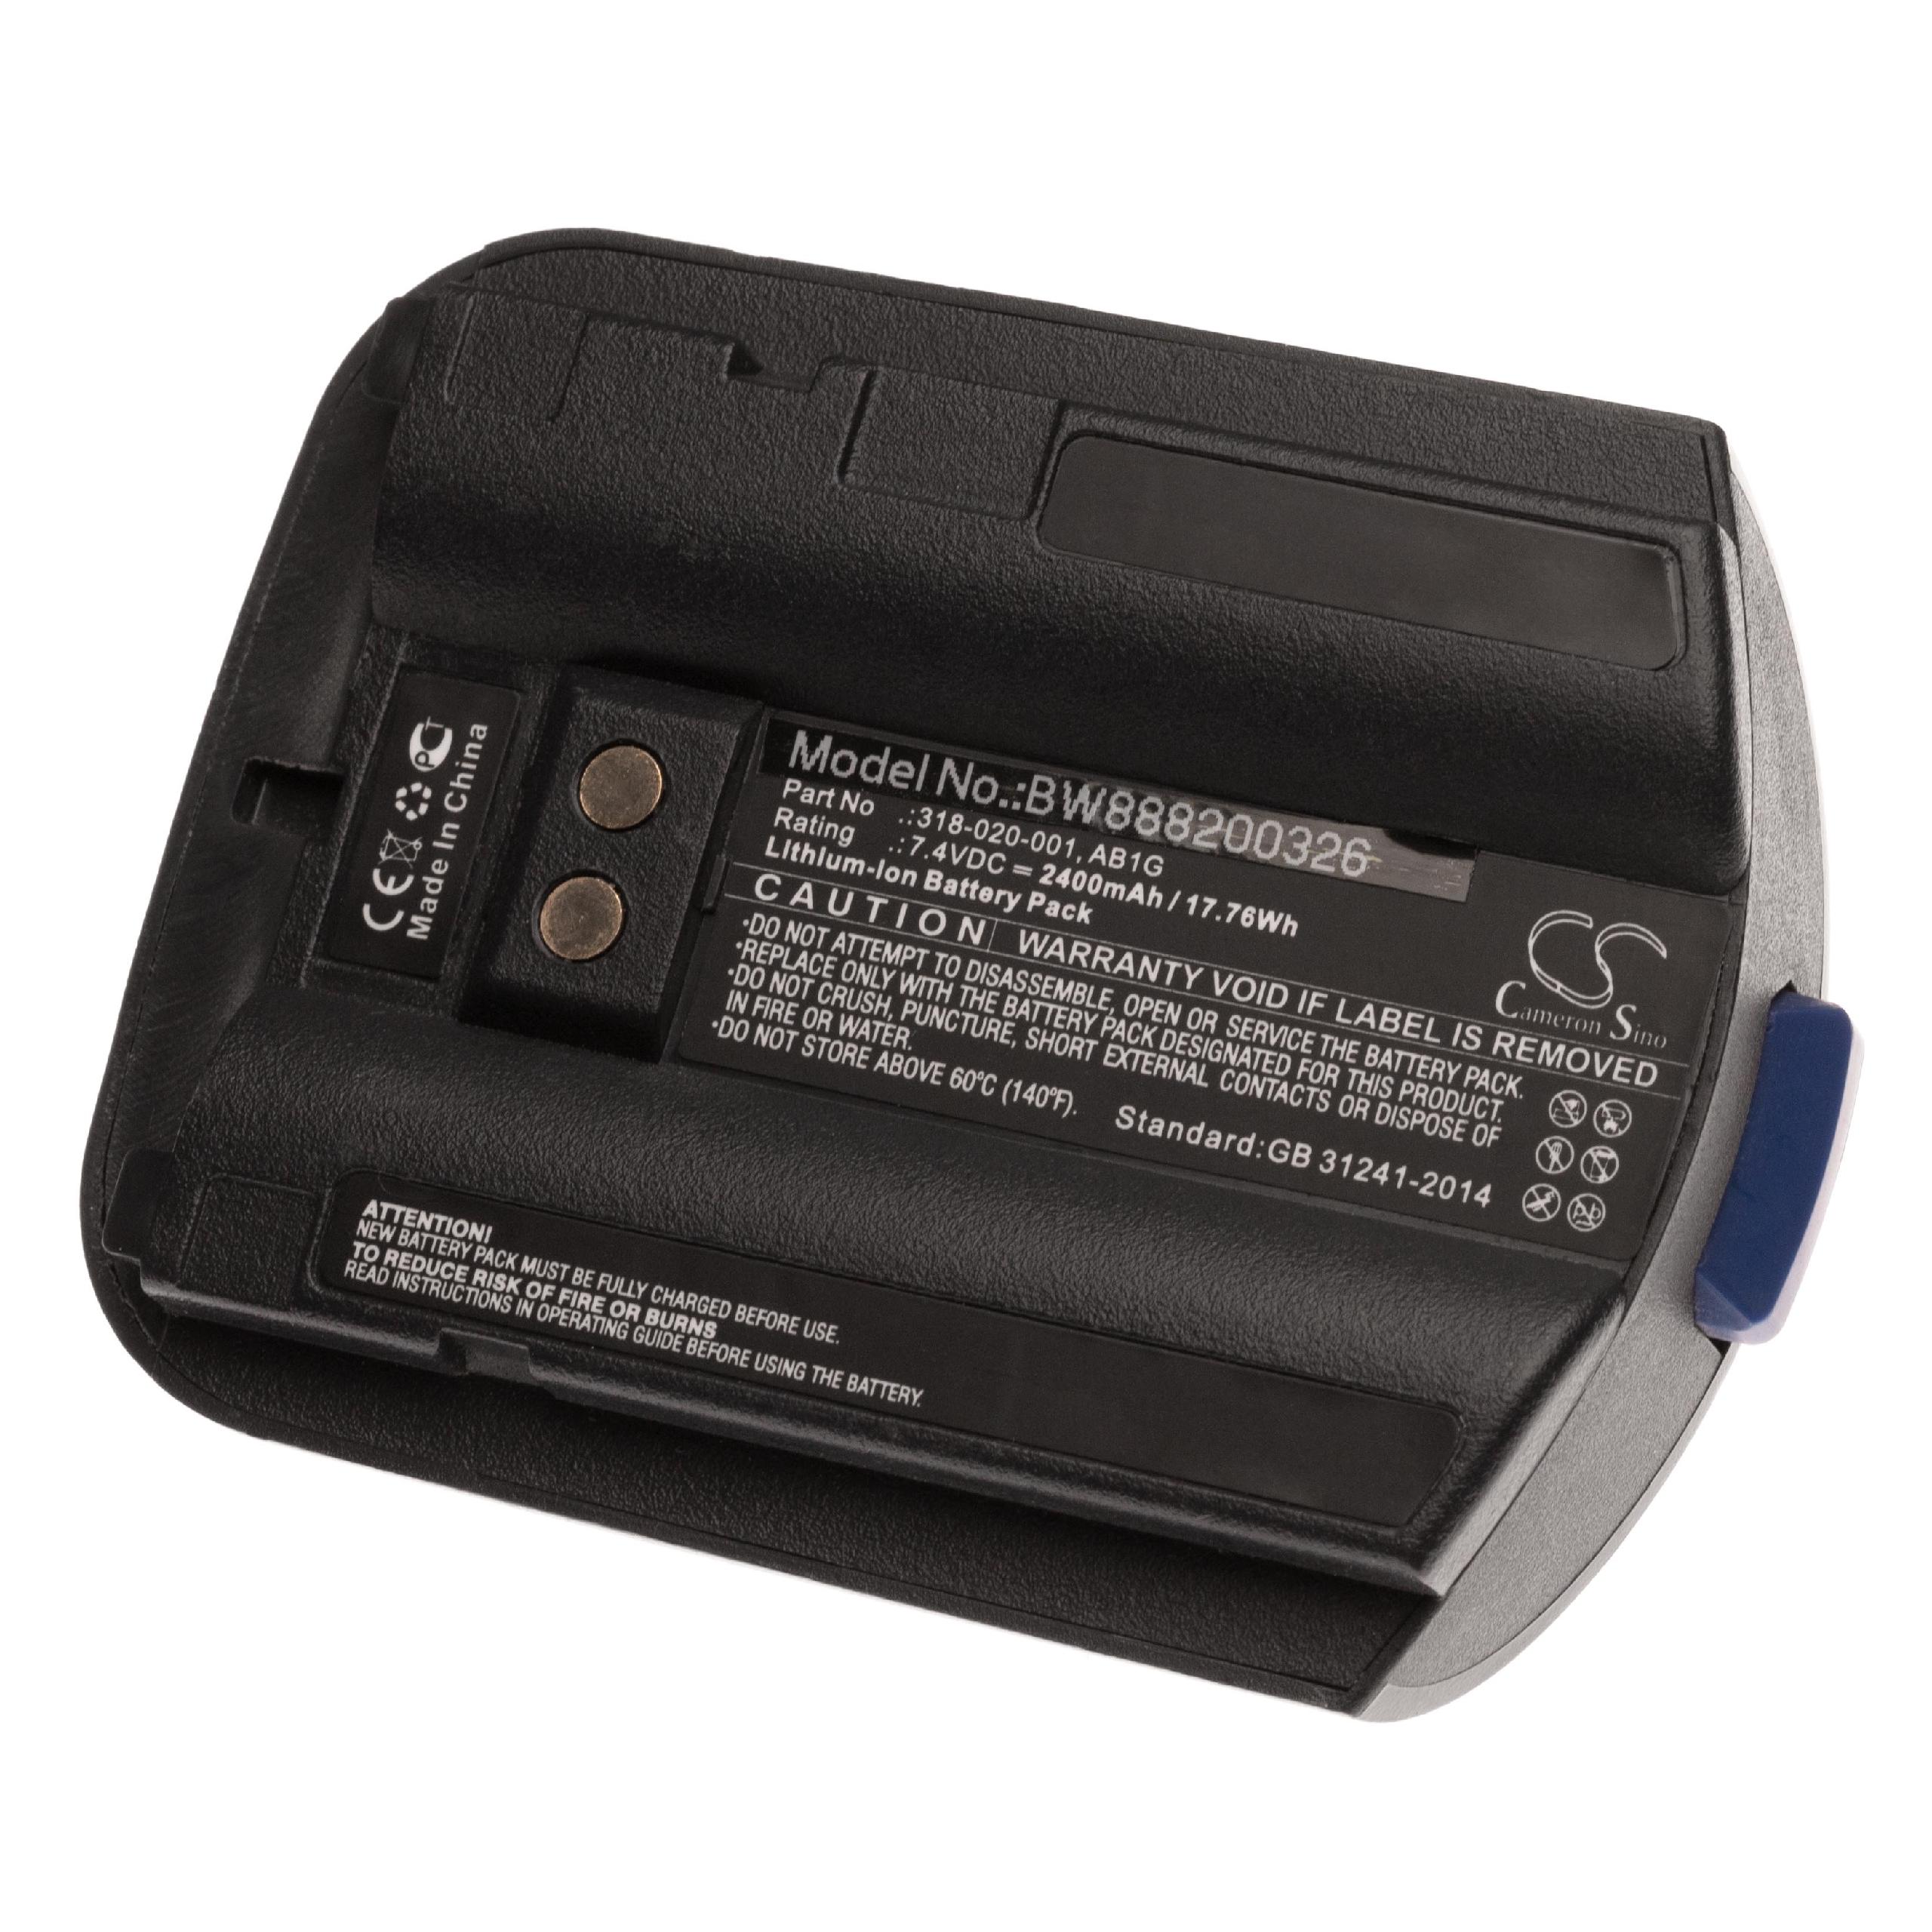 Batterie remplace Intermec AB1G, 318-020-001 pour ordinateur mobile PDA scanner - 2400mAh 7,4V Li-ion